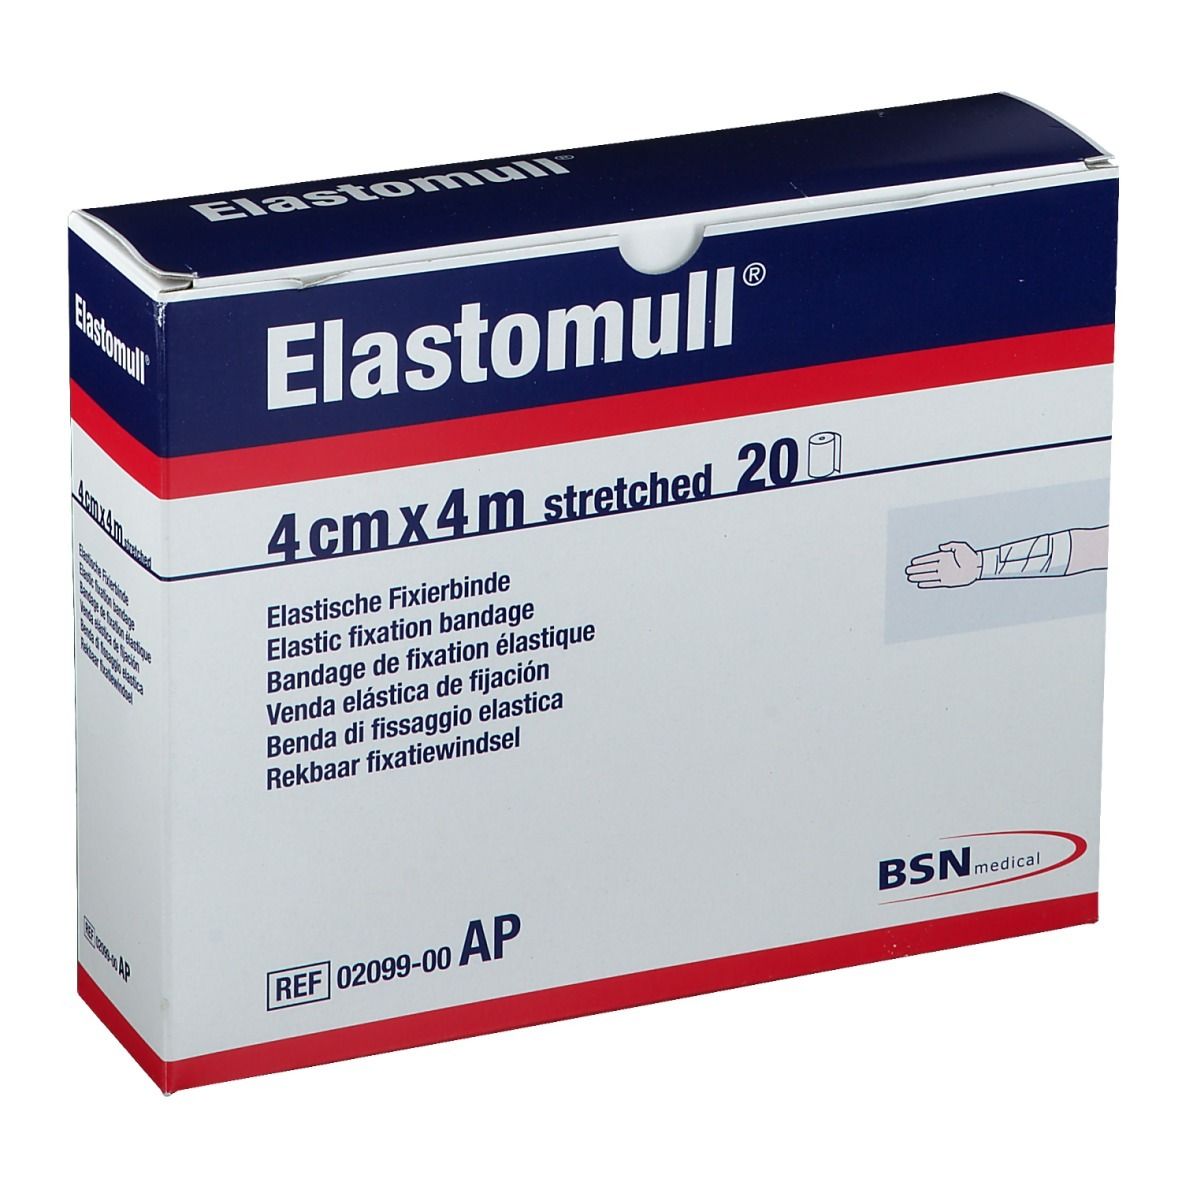 Elastomull® elastische Fixierbinde 4 m x 4 cm